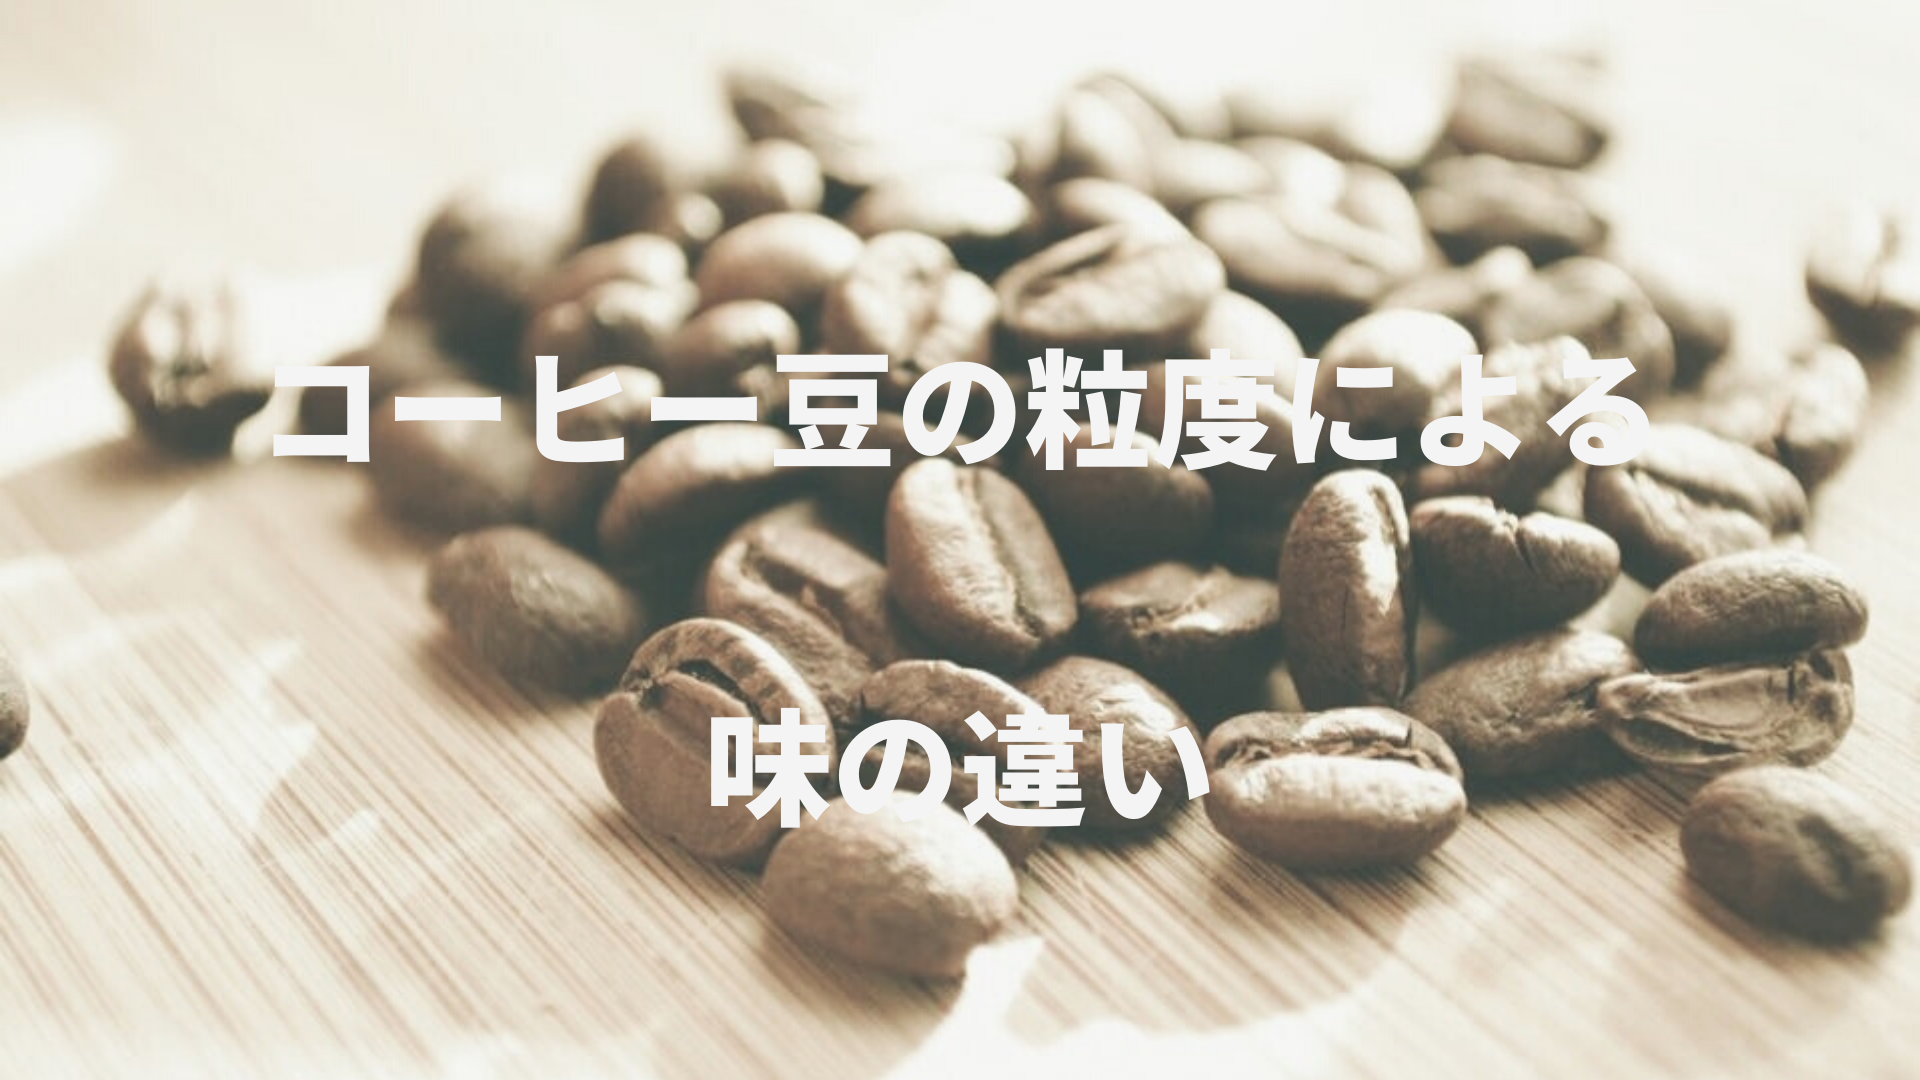 【コーヒーミル・使い方】コーヒー豆の粒度を写真で解説